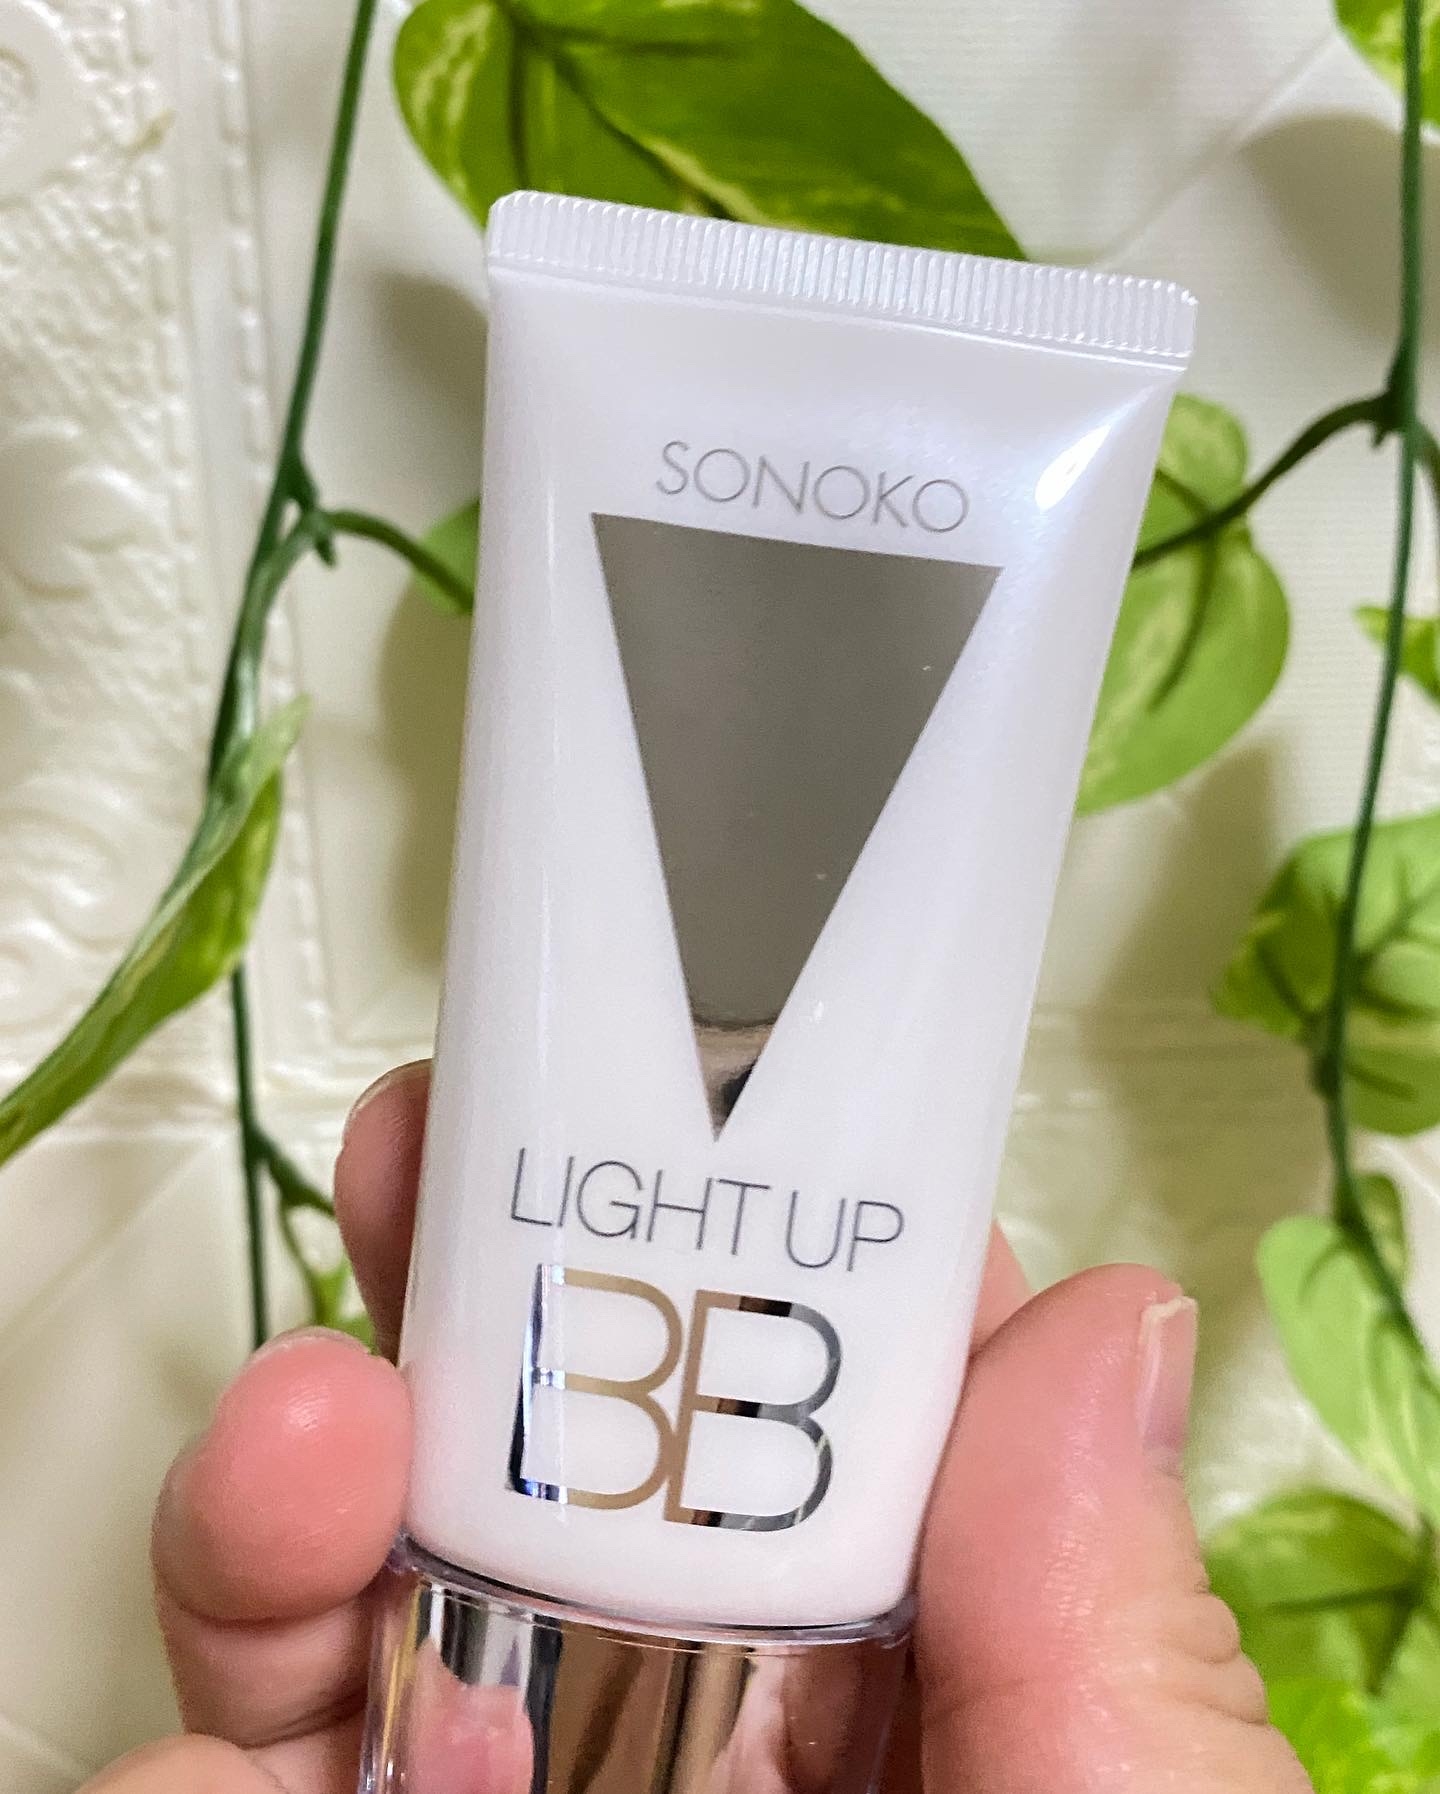 SONOKO(ソノコ) ライトアップBBの良い点・メリットに関するマイピコブーさんの口コミ画像1